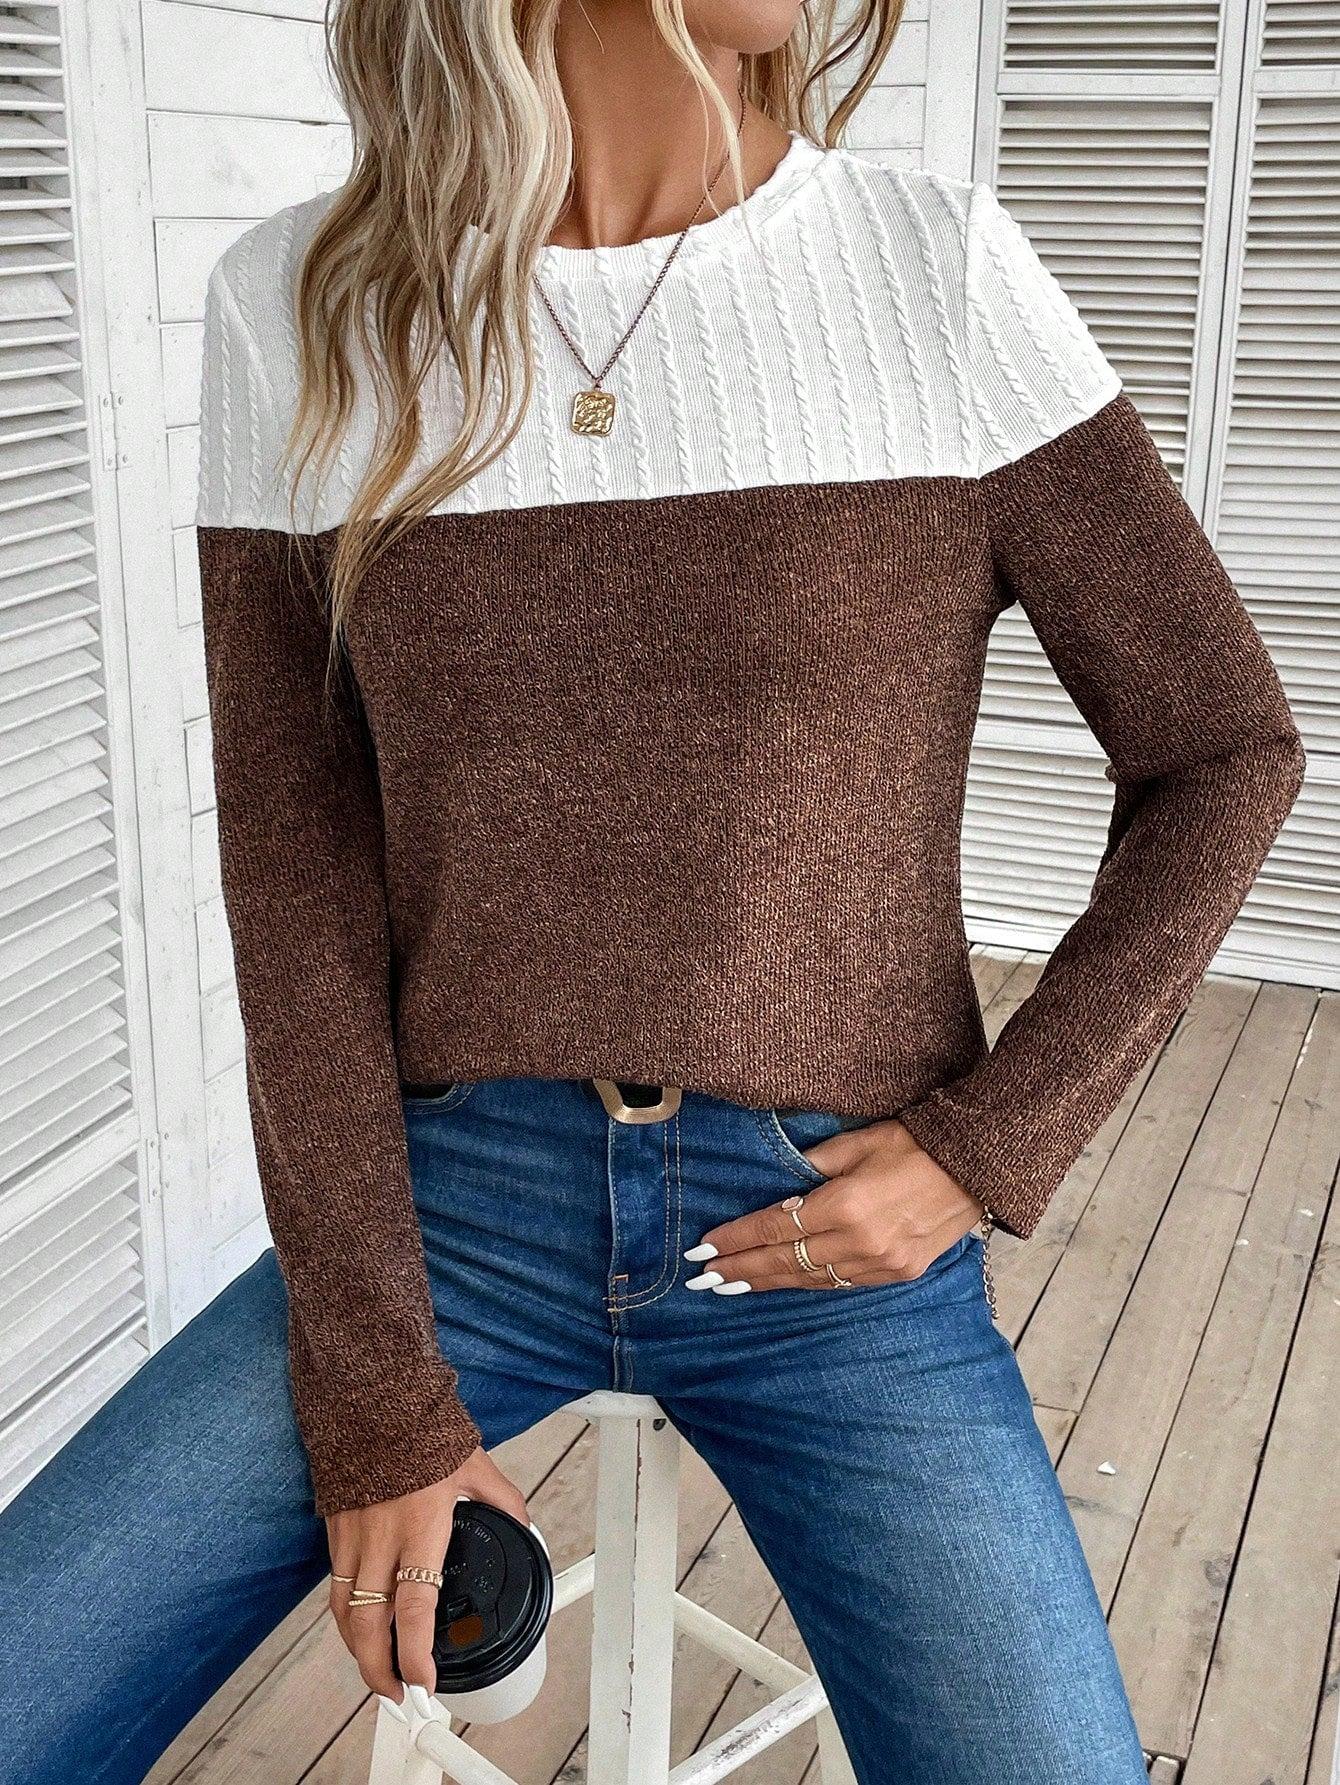 brązowy dzianinowy sweter łączenie kontrast tekstura